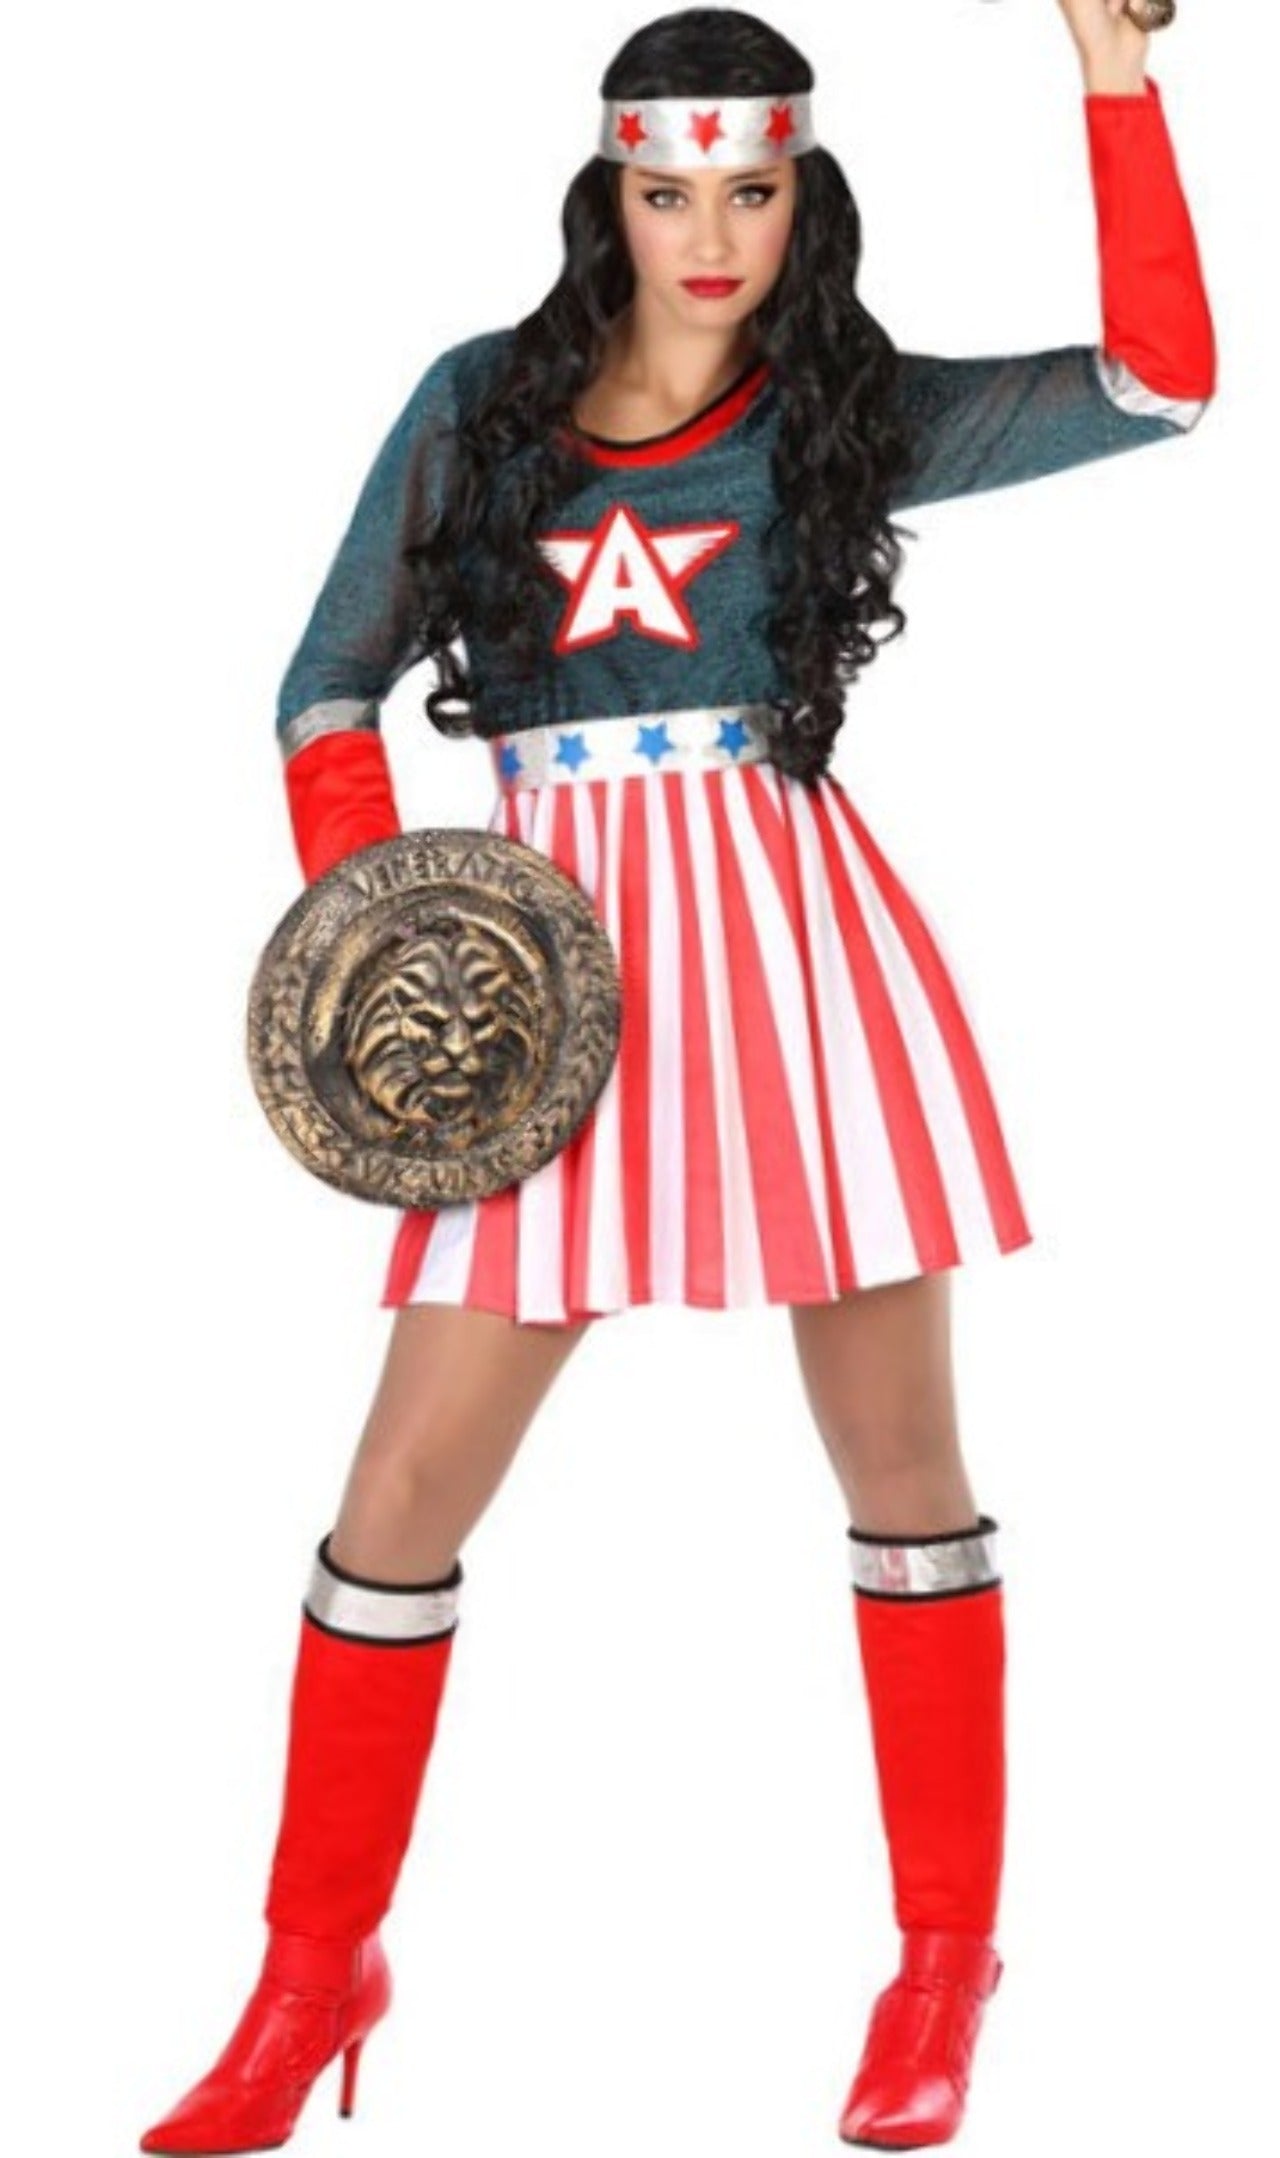 Immagini Stock - Giovane Donna Sicura Di Sé In Costume Super-eroe. Image  36717248